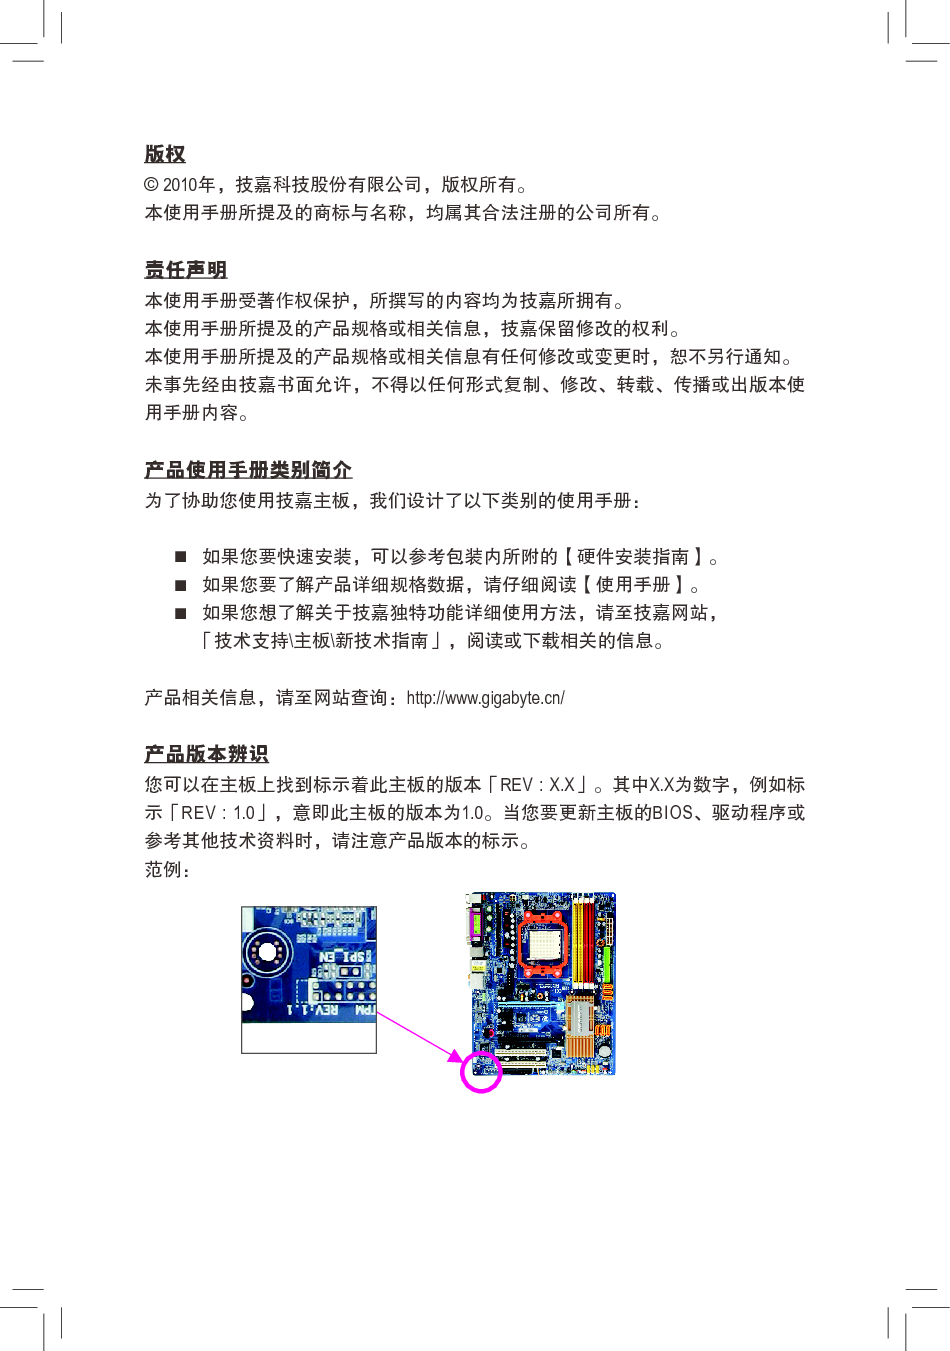 技嘉 Gigabyte GA-MA770T-UD3 1401版 使用手册 第2页